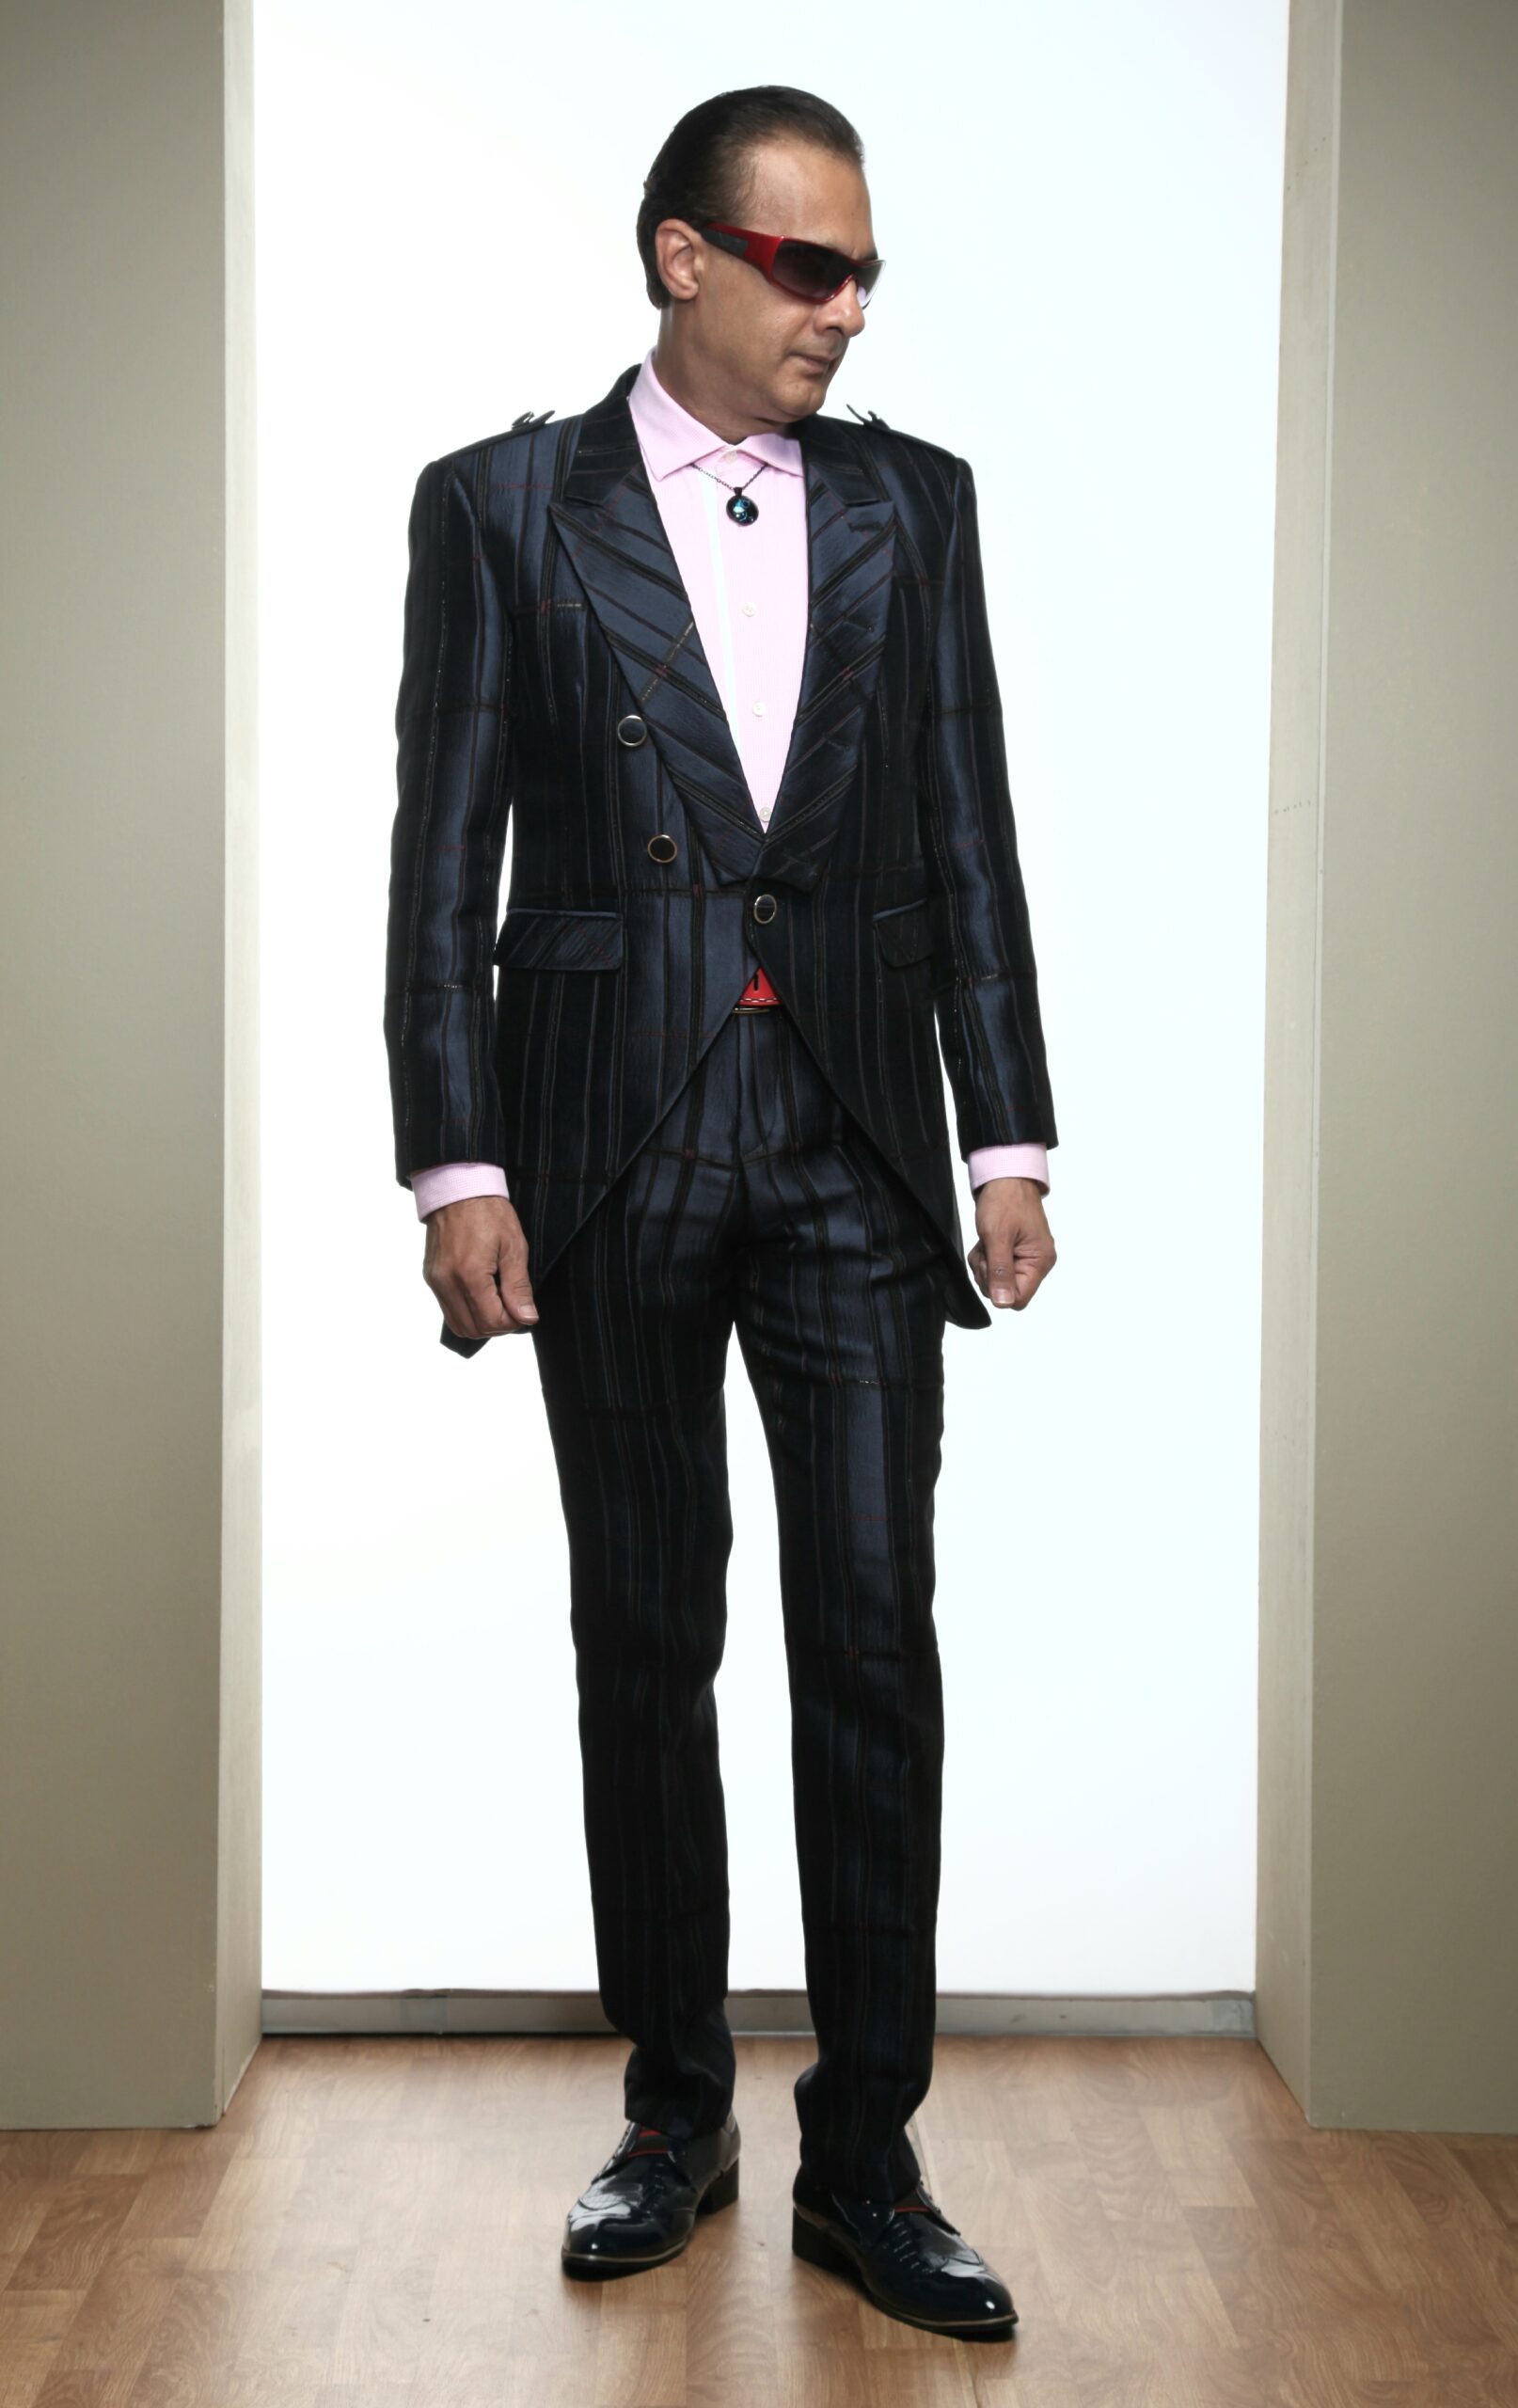 MST-5020-03-rent_rental_hire_tuxedo_suit_black_tie_suit_designer_suits_shop_tailor_tailors_singapore_wedding